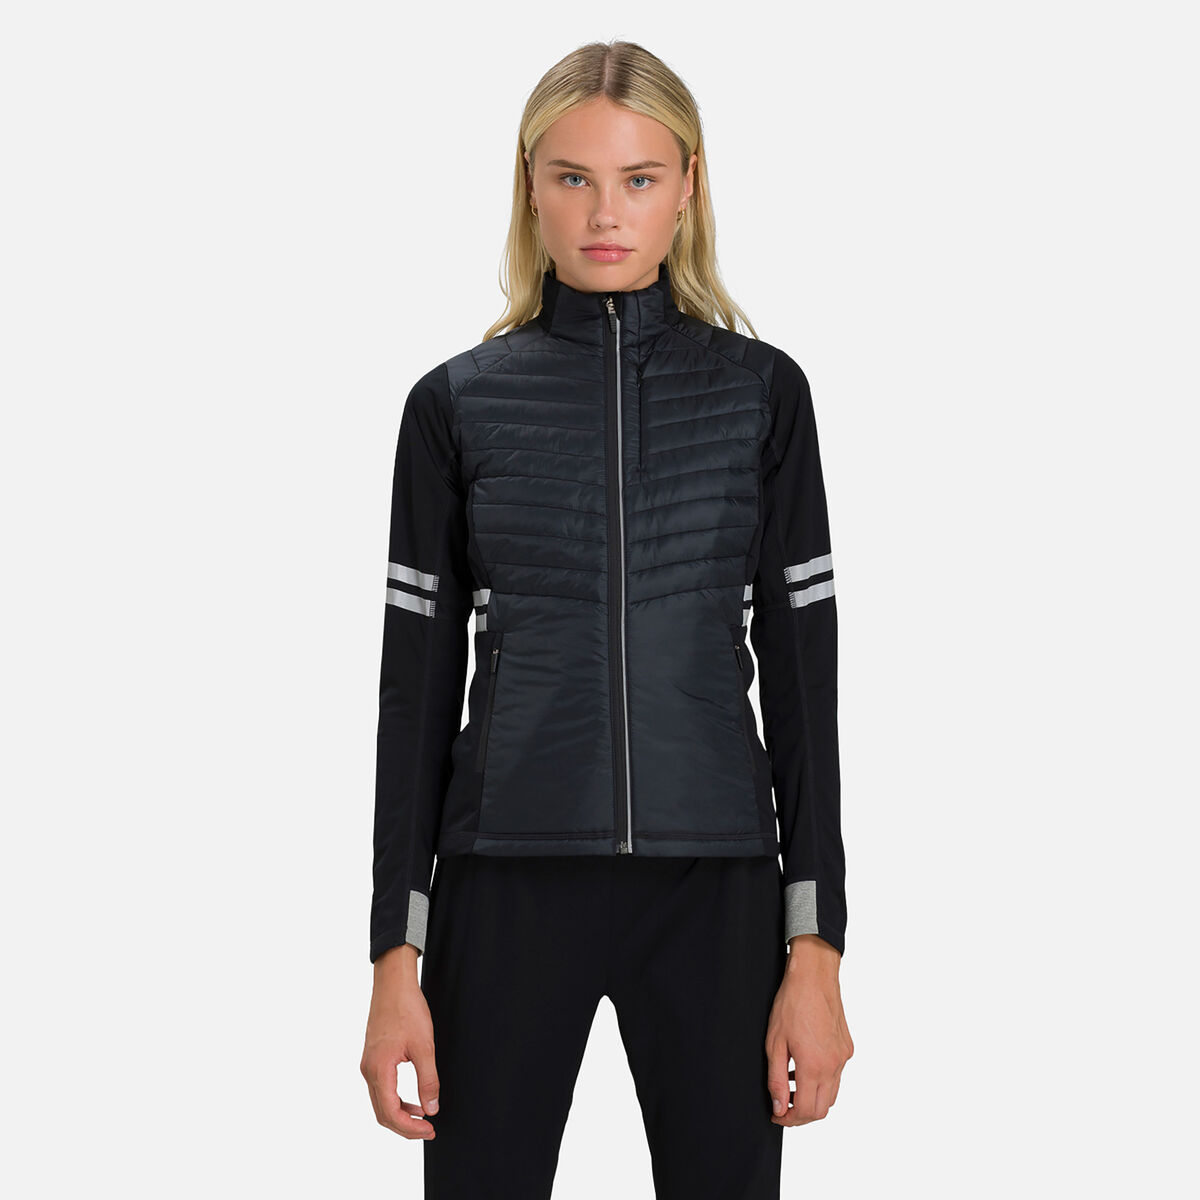 Women's Poursuite Warm nordic ski jacket